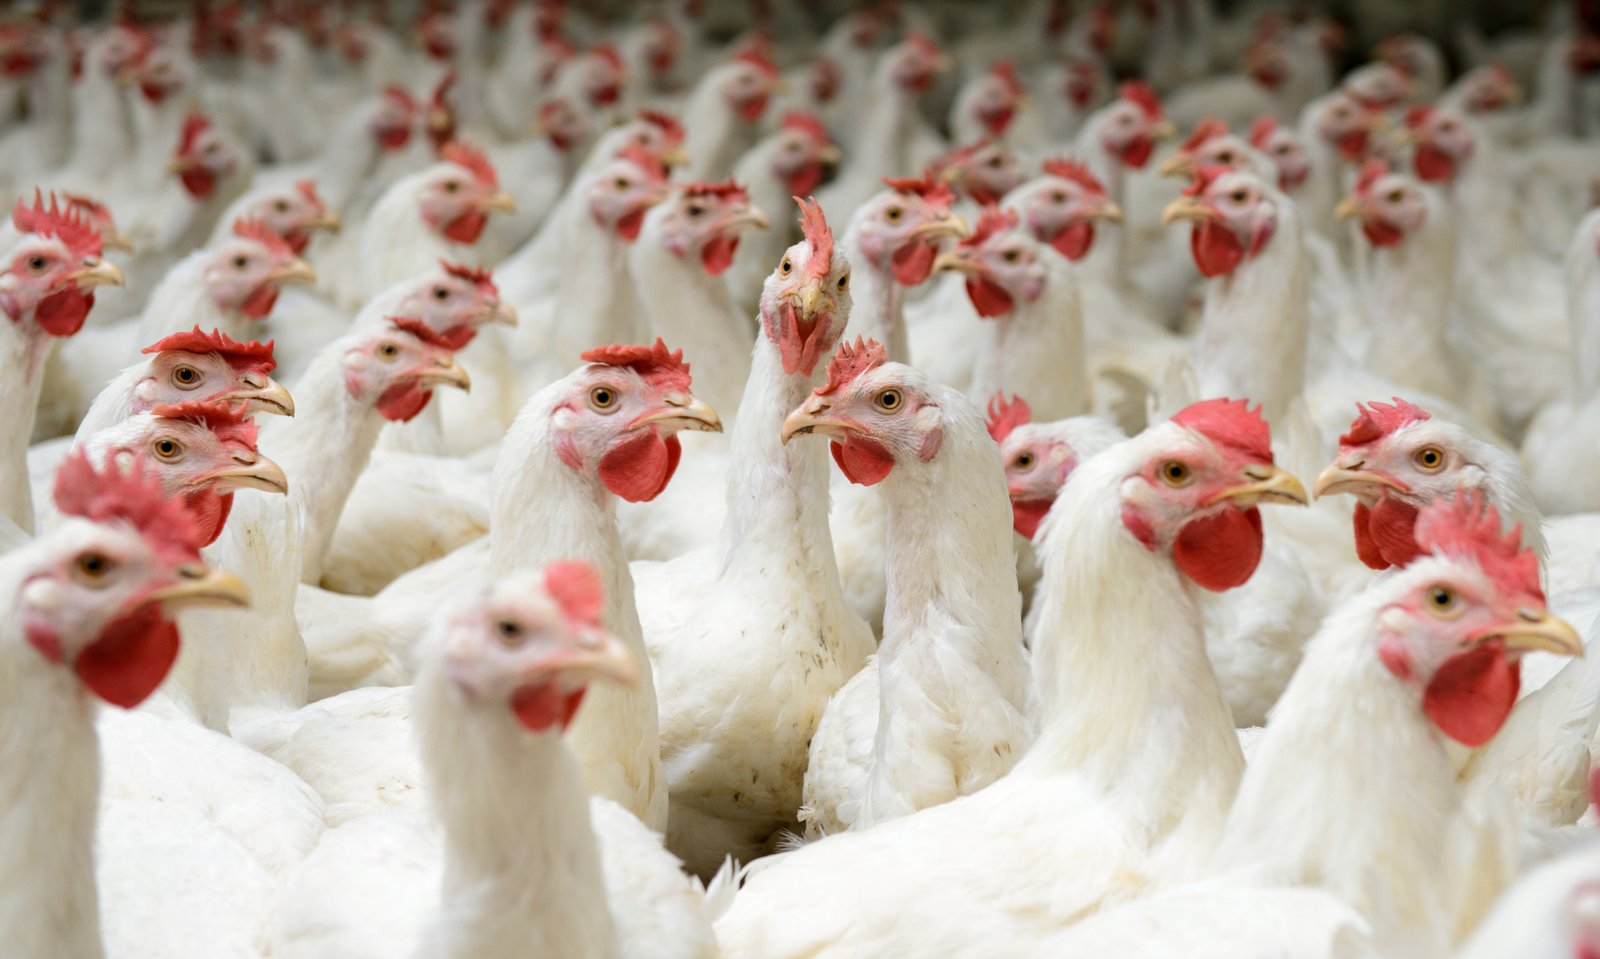 Pollos de engorde: conoce su cría, razas y alimentación